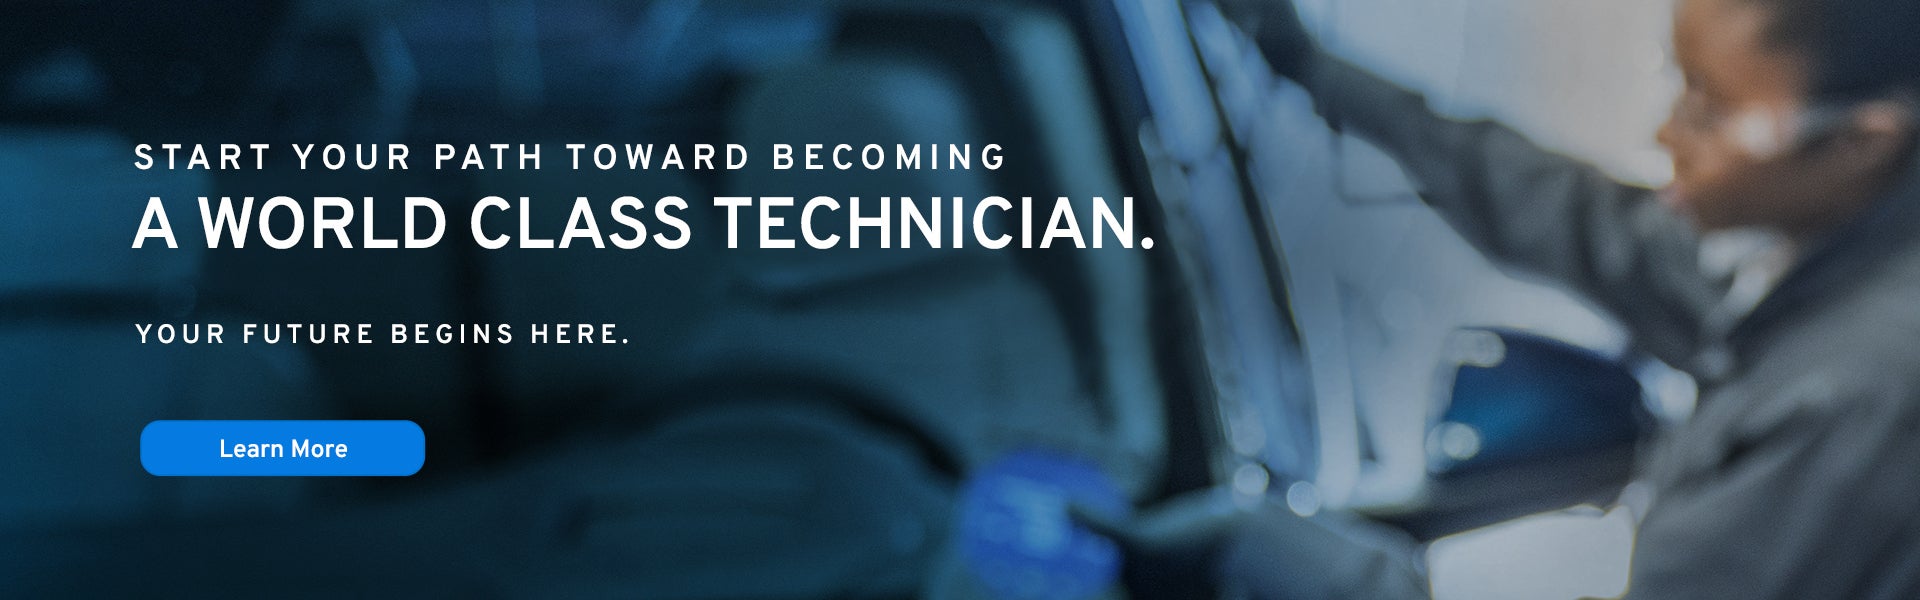 Start your path toward becoming a world class technician